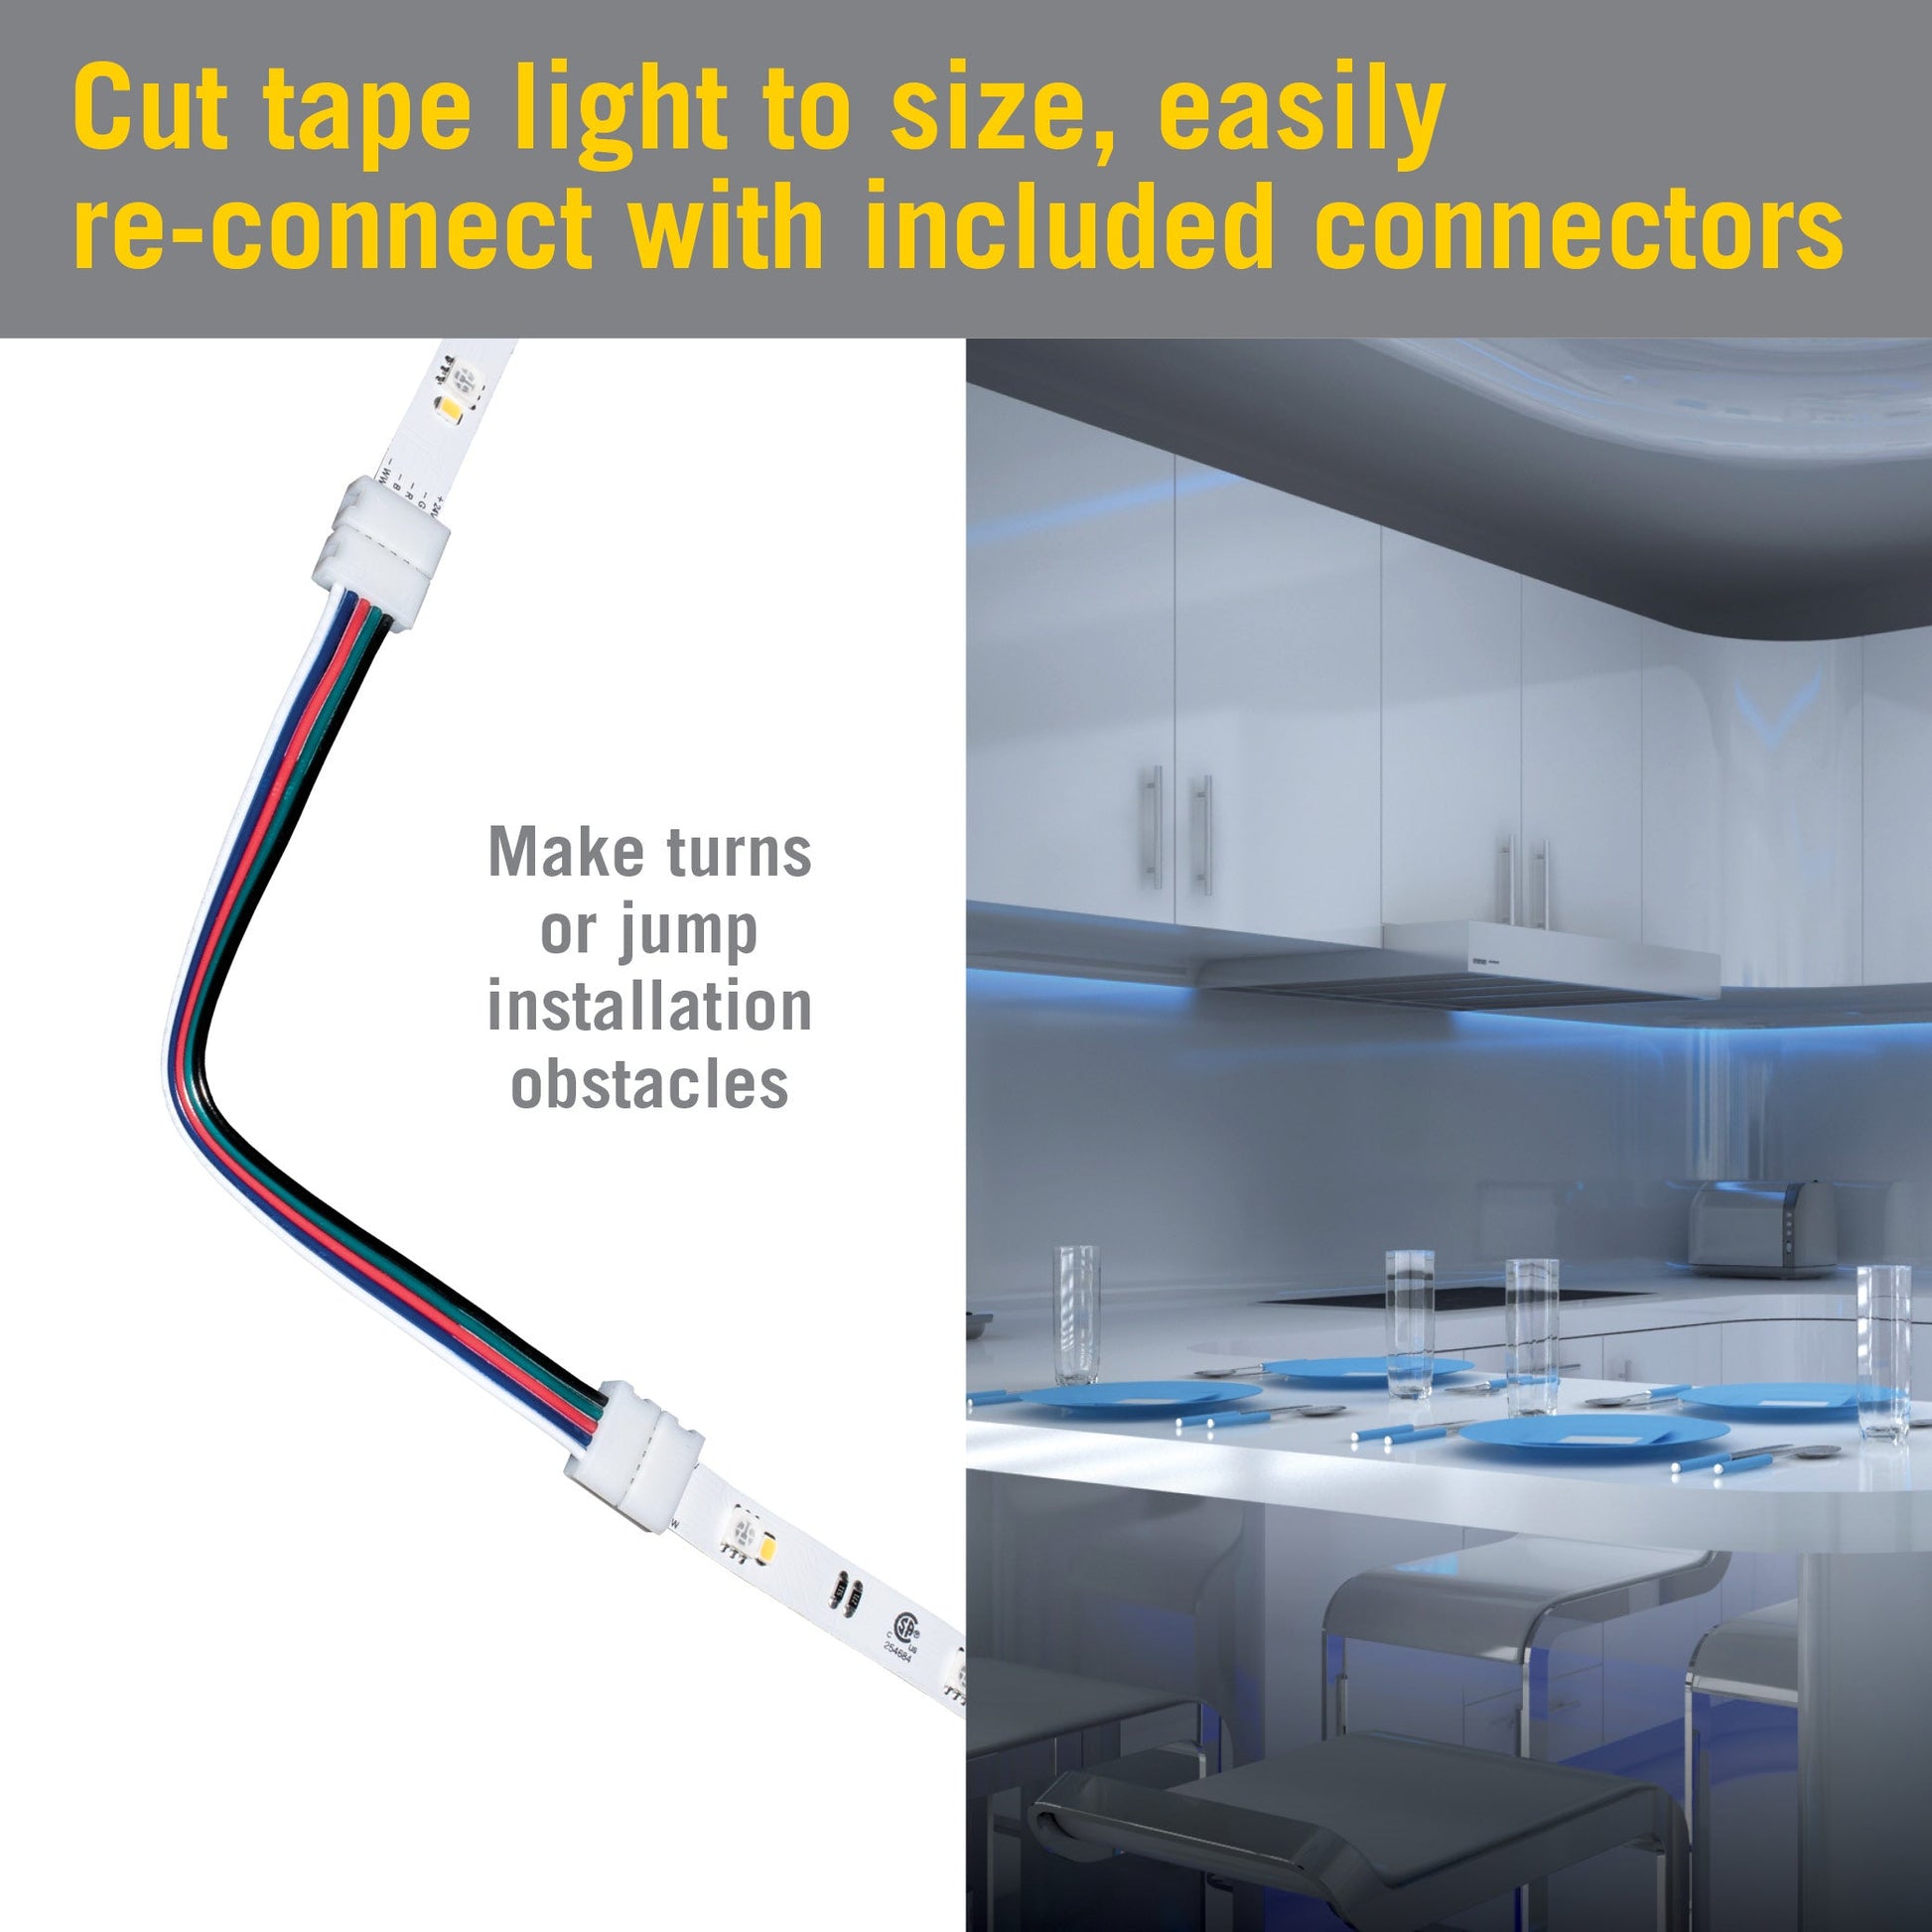 RibbonFlex Home 24V RGBW Multicolor Smart LED Strip Light Kit